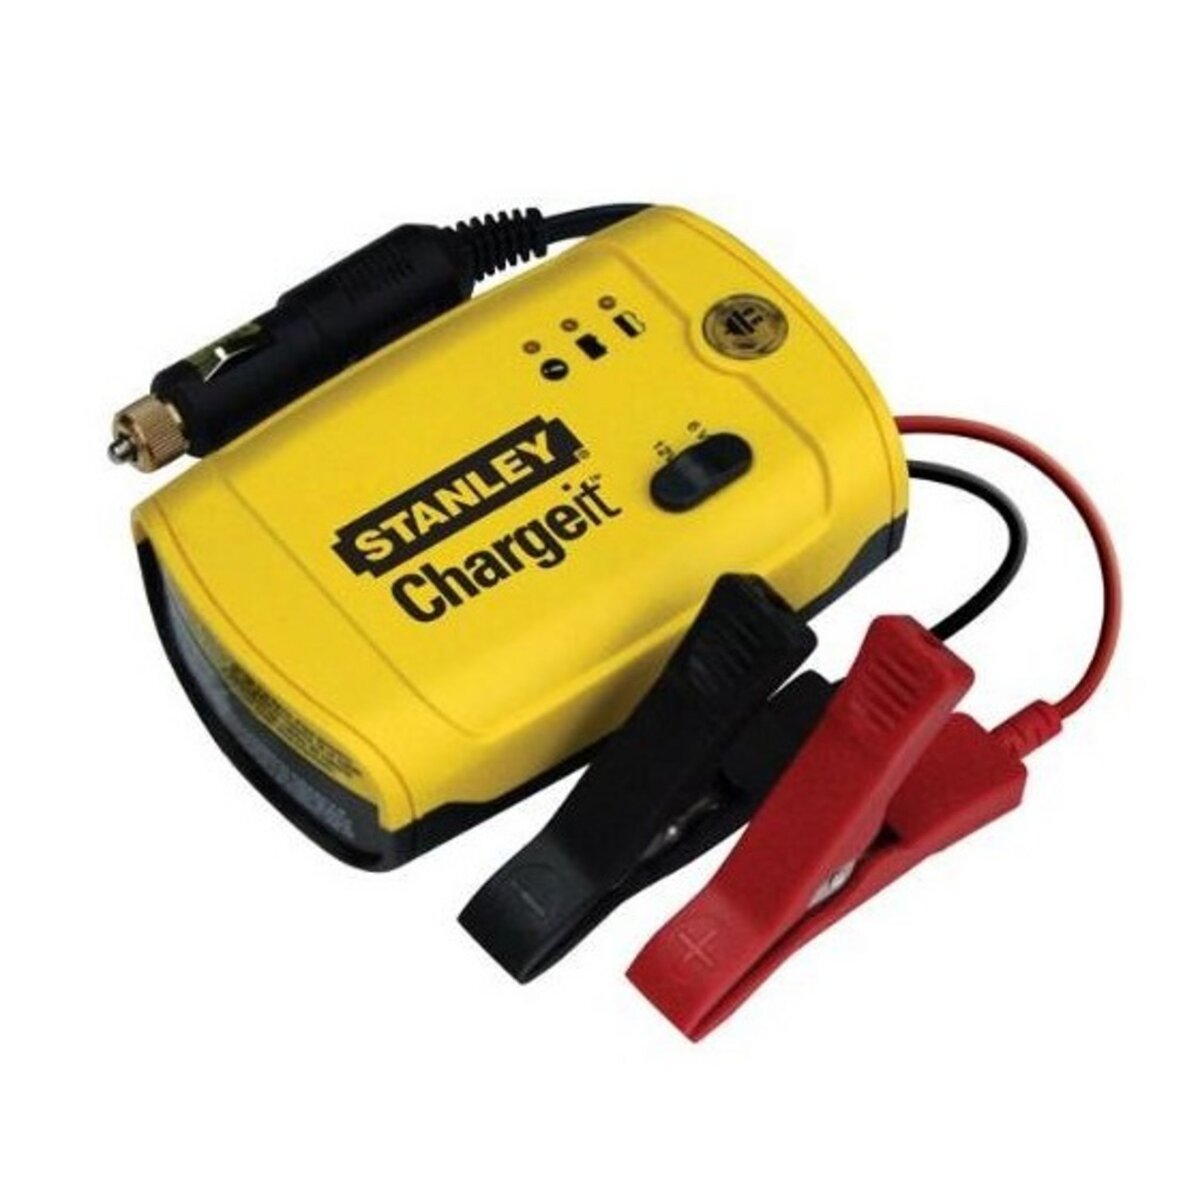 STANLEY Chargeur de batterie BC209-E 6/12V - 2A